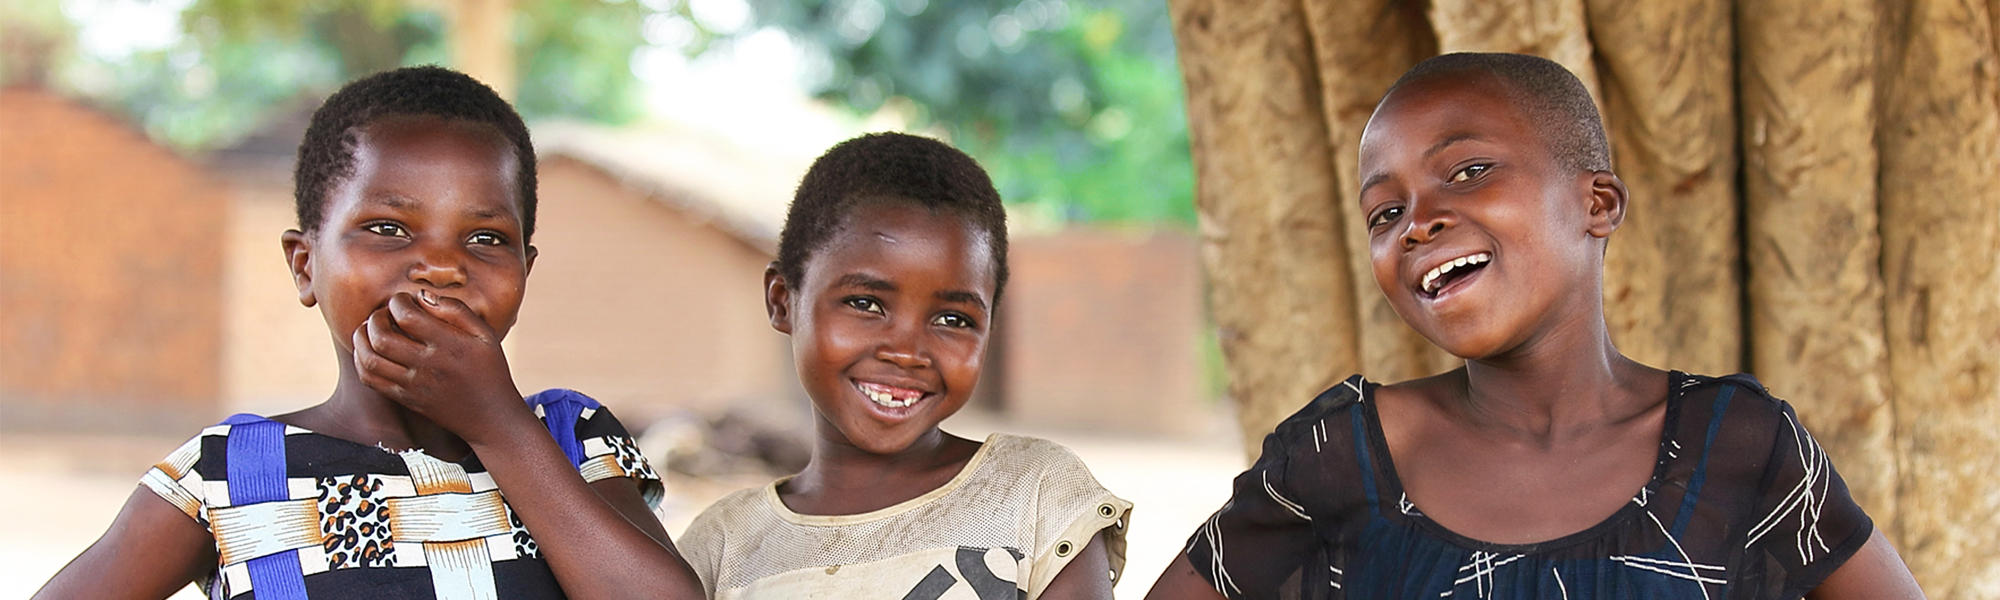 Tre jenter fra Malawi smiler og ler ute på en åpen plass